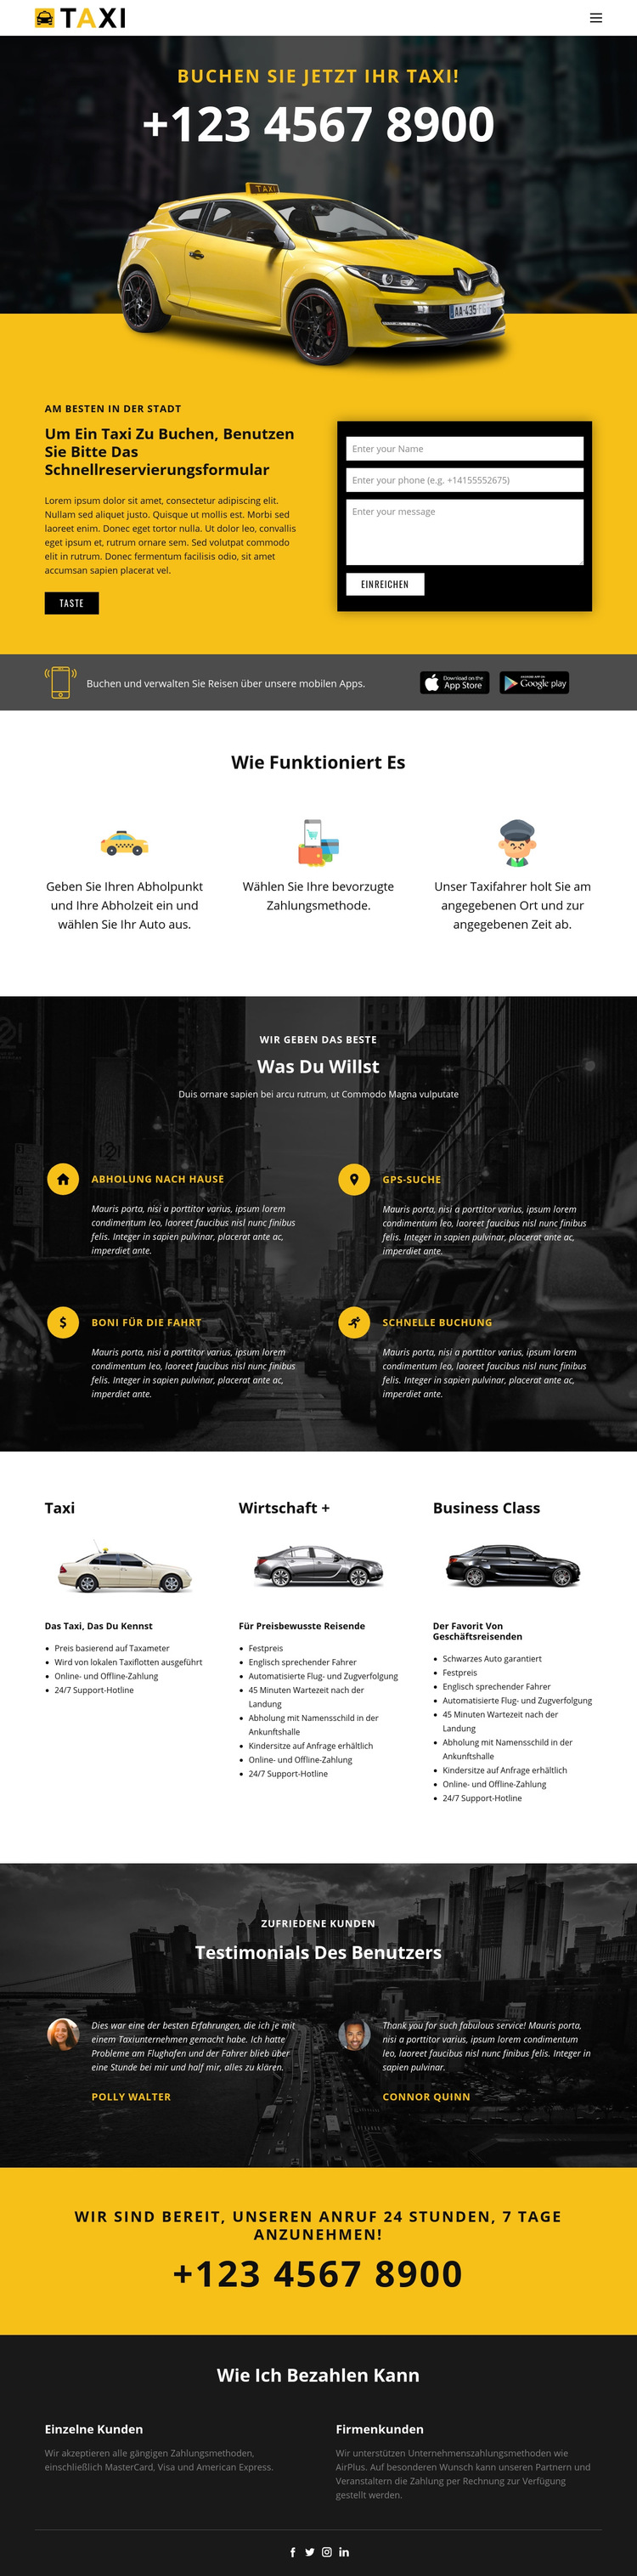 Schnellste Taxis Website-Vorlage